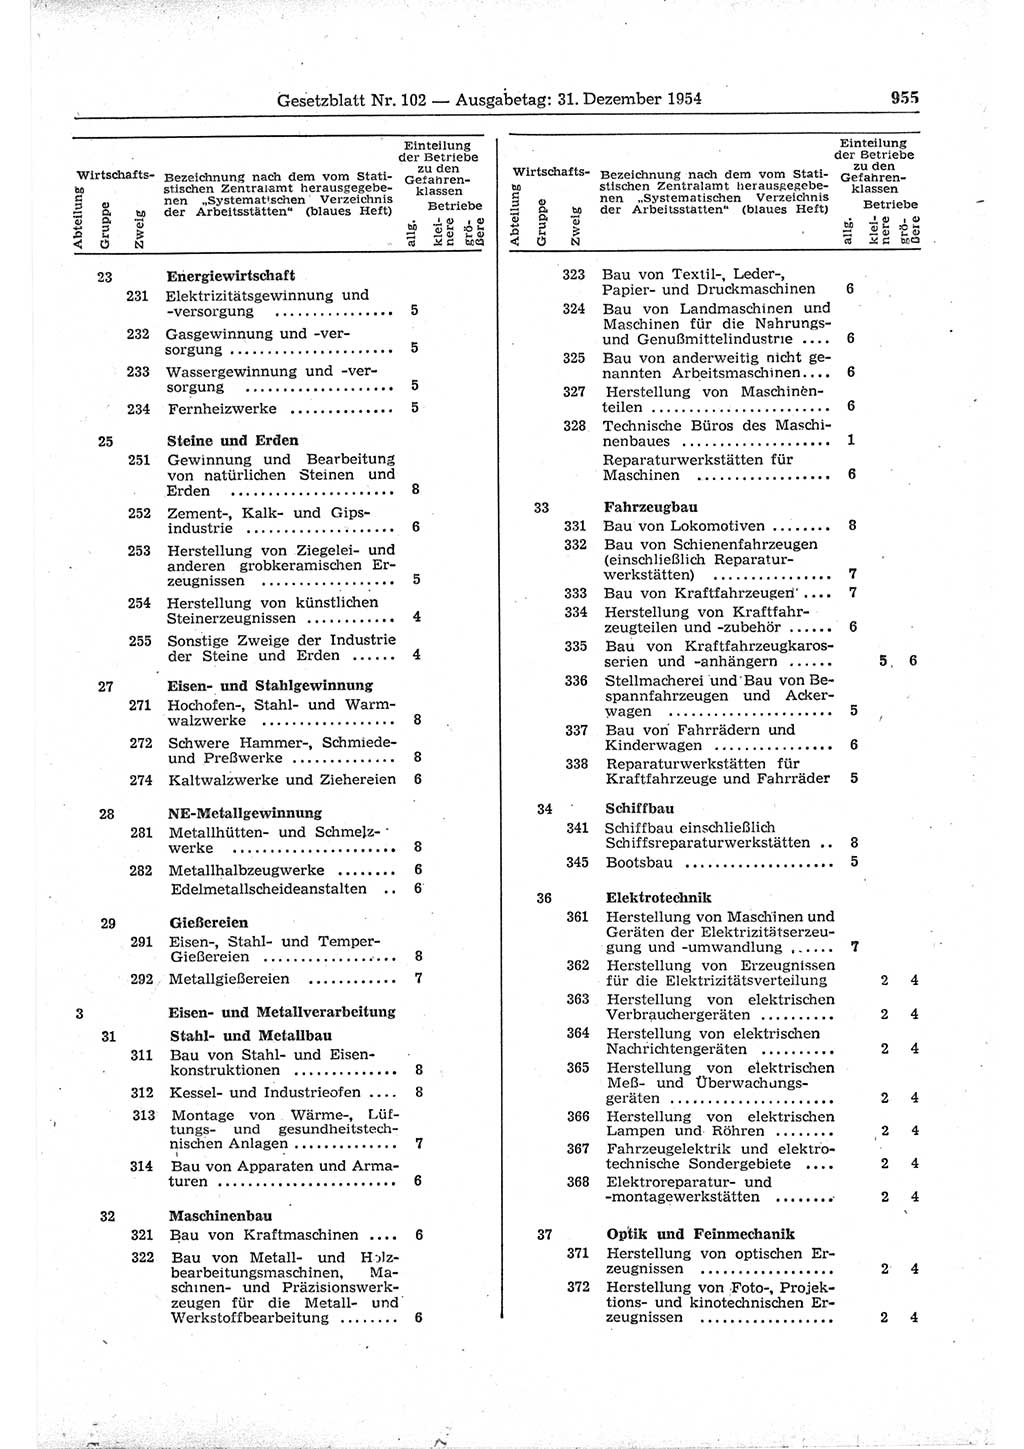 Gesetzblatt (GBl.) der Deutschen Demokratischen Republik (DDR) 1954, Seite 955 (GBl. DDR 1954, S. 955)